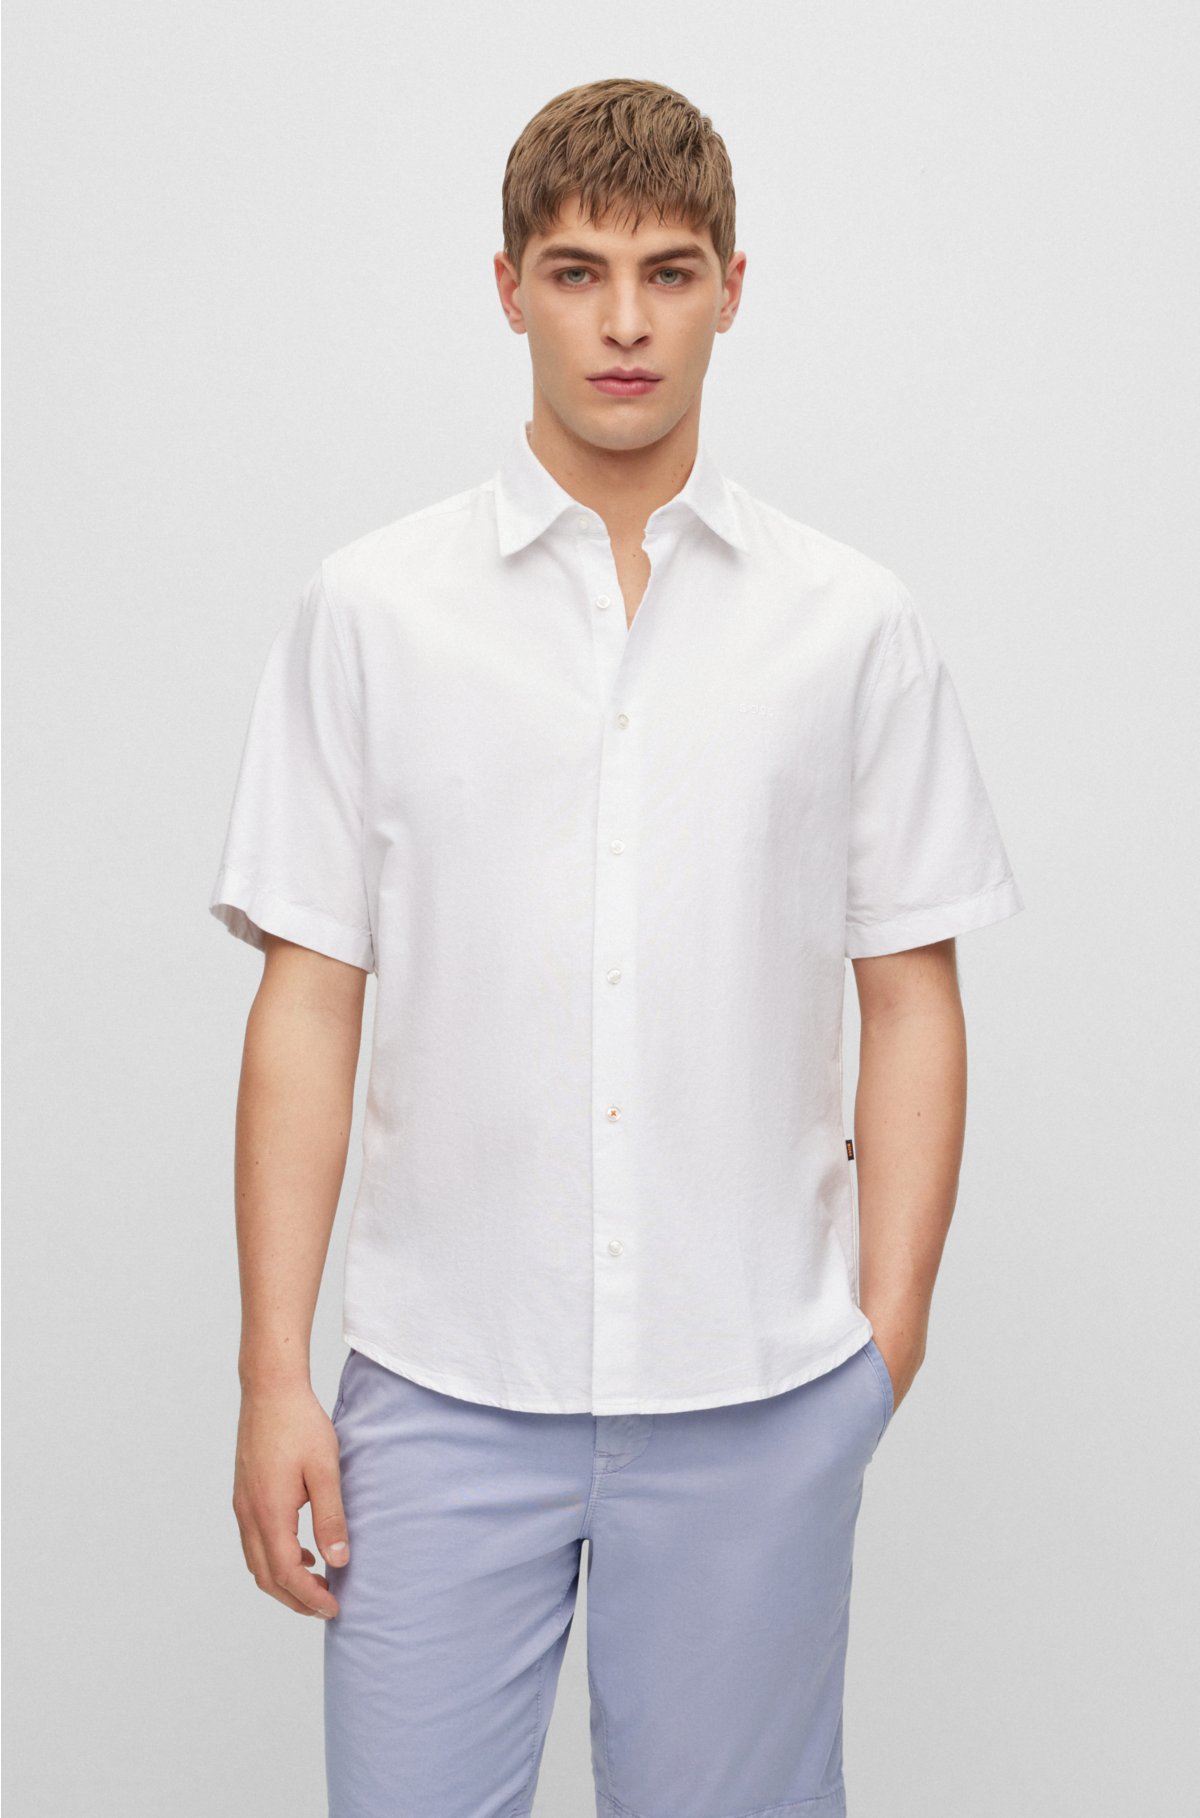 Relaxed Fit Short-sleeved Shirt - White - Men